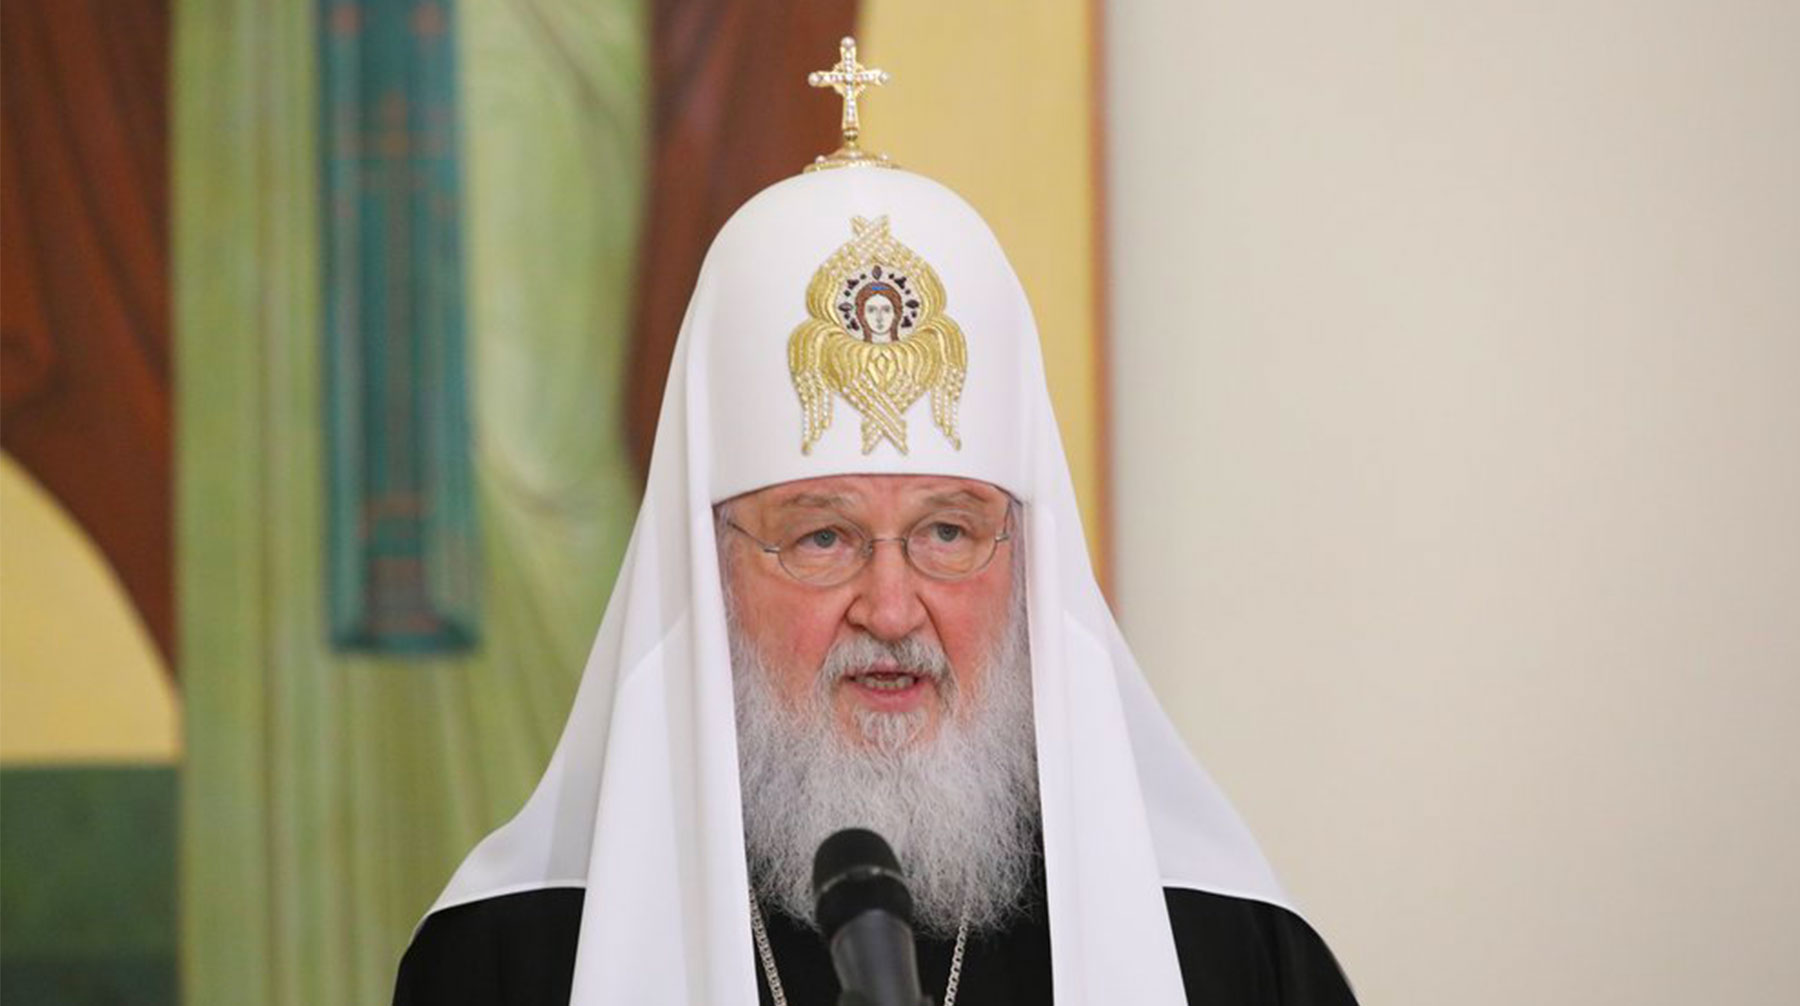 Россияне поняли, что без Бога ничего не получится, заявил глава церкви Фото: © Агенство Москва / Никеричев Андрей